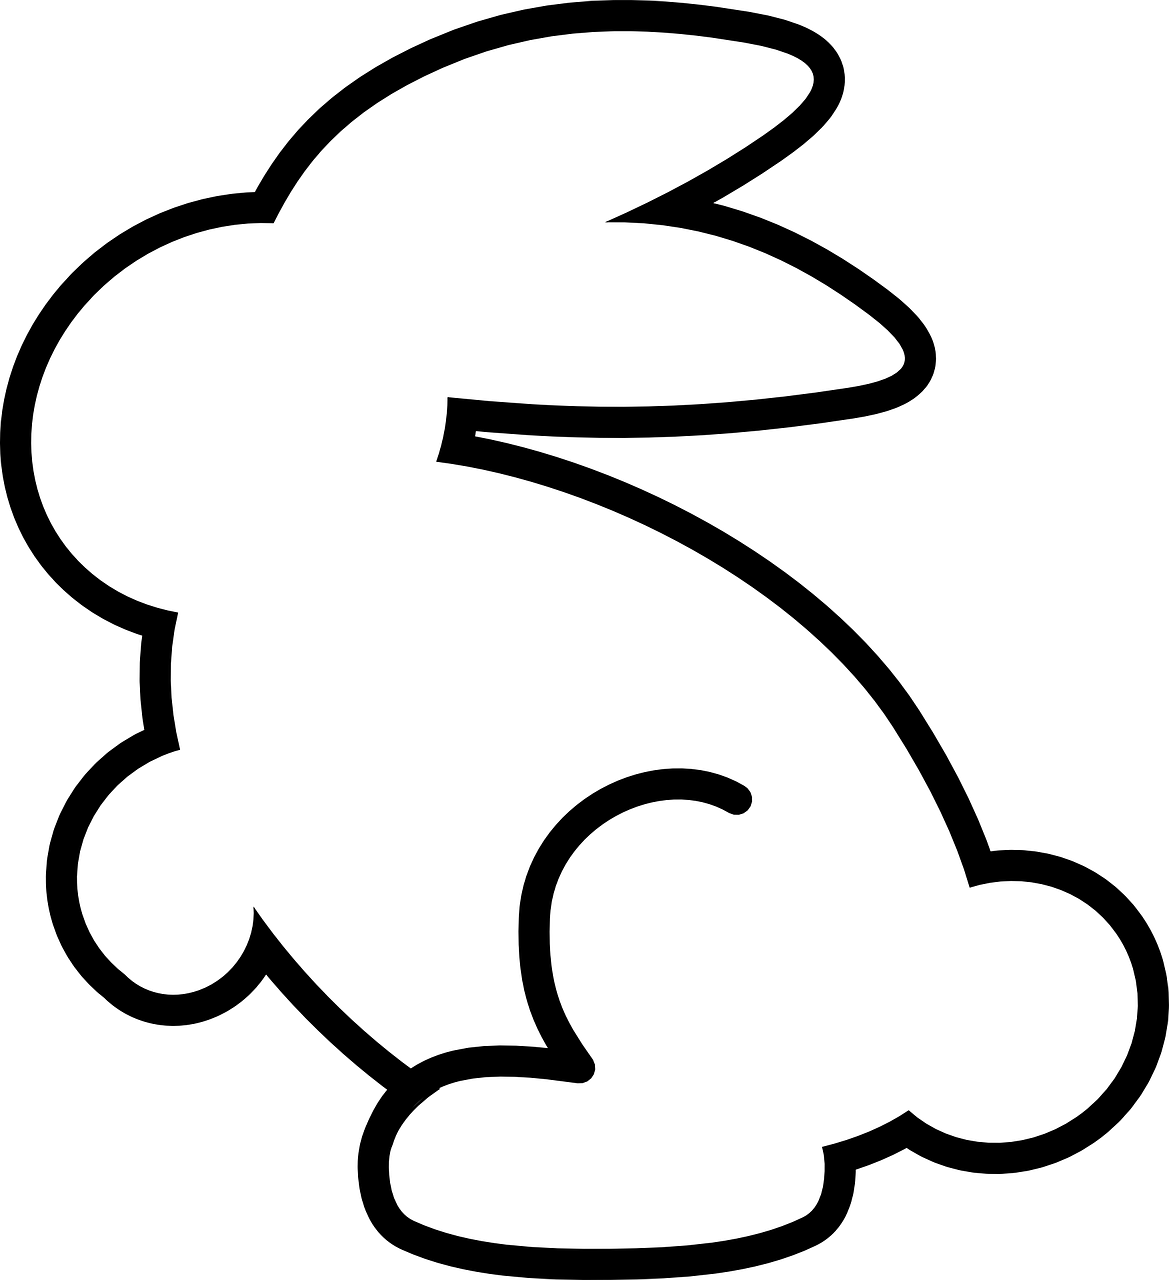 bunny shape cutout cookie free photo